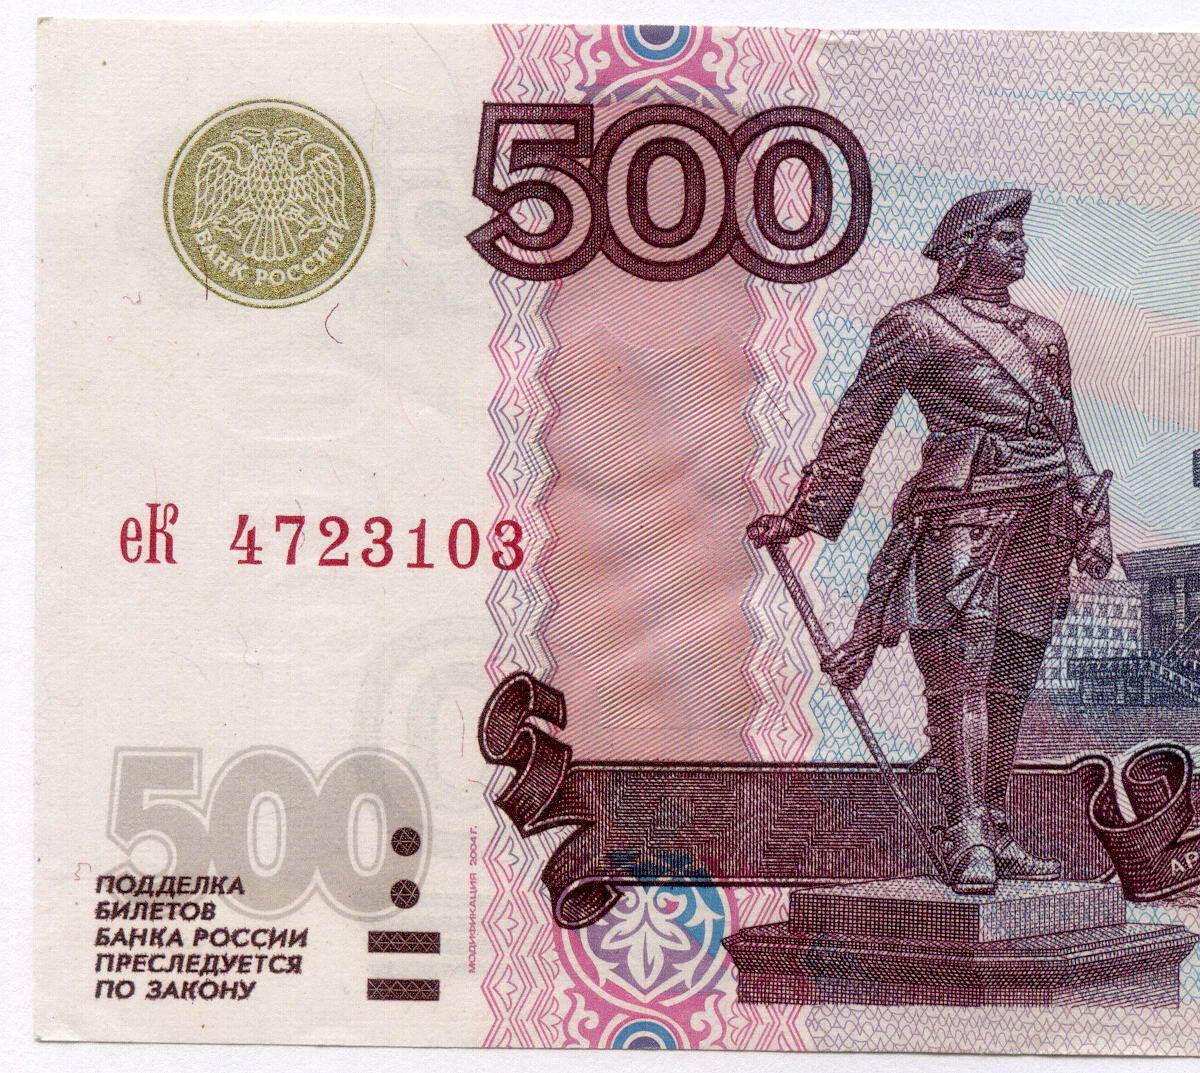 500 00 в рублях. 500 Рублей. Купюра 500 рублей. Банкнота 500 рублей. Деньги 500 рублей.